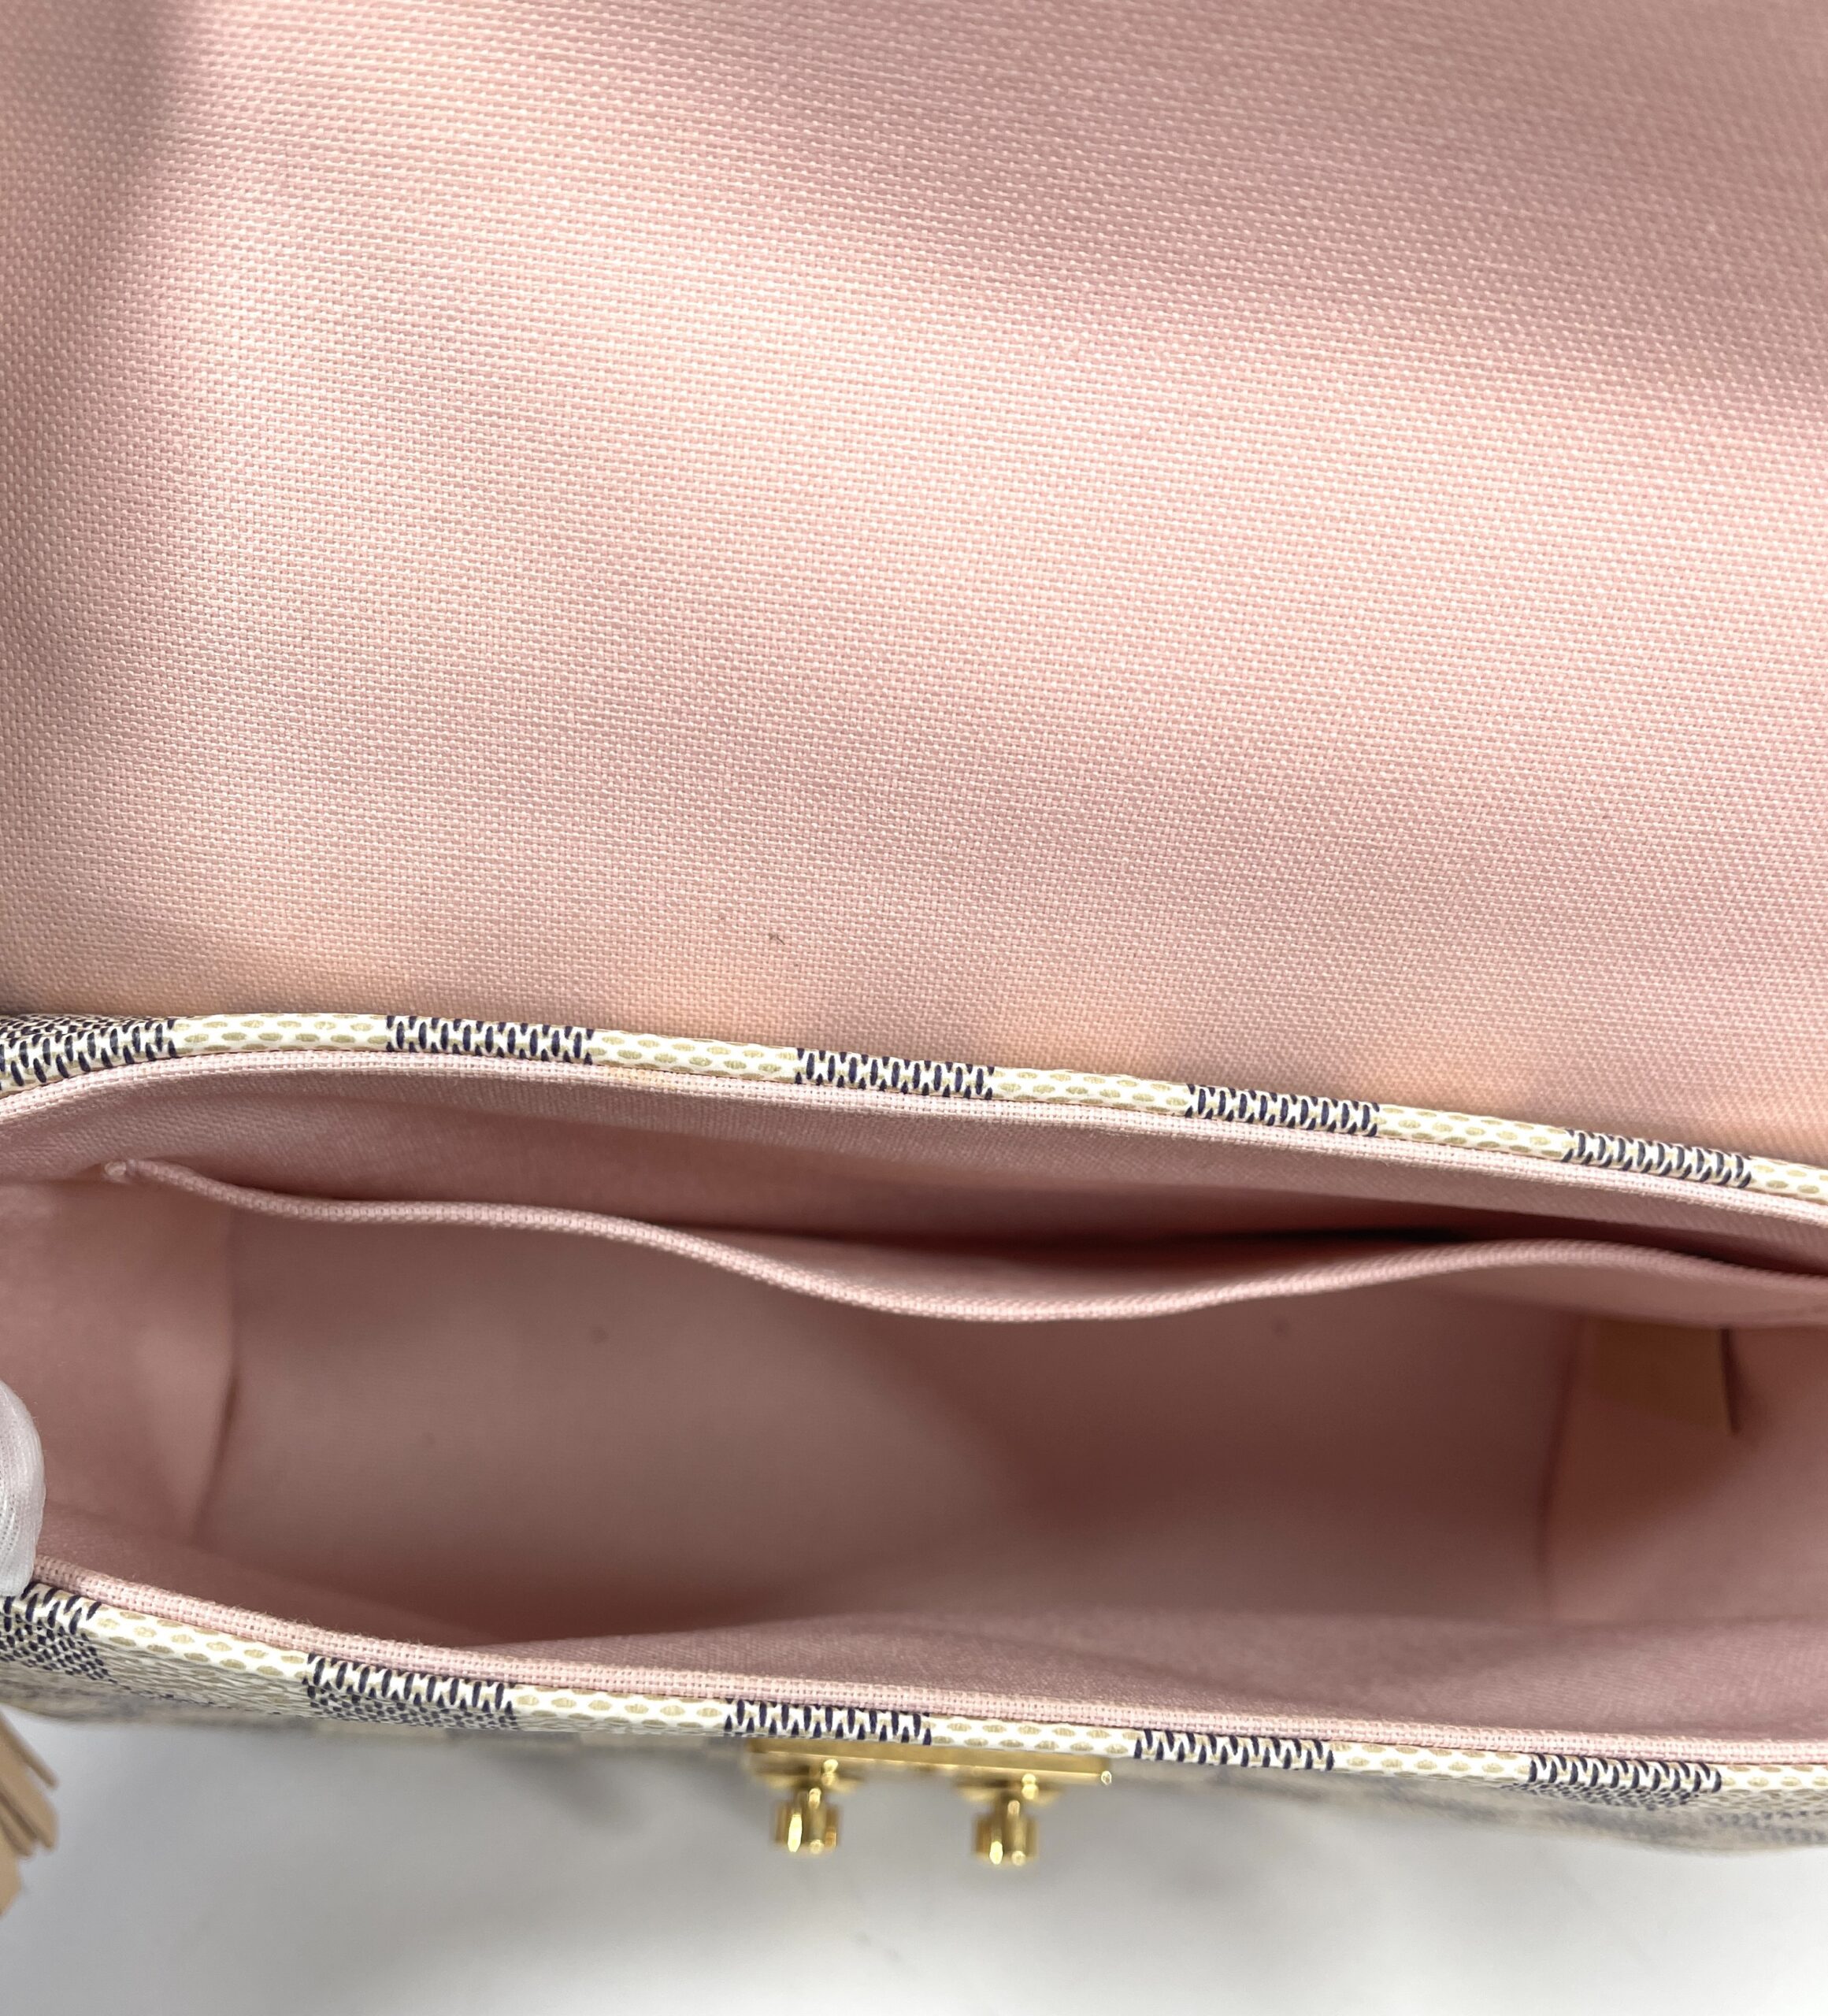 Purse Insert for Louis Vuitton Croisette Bag